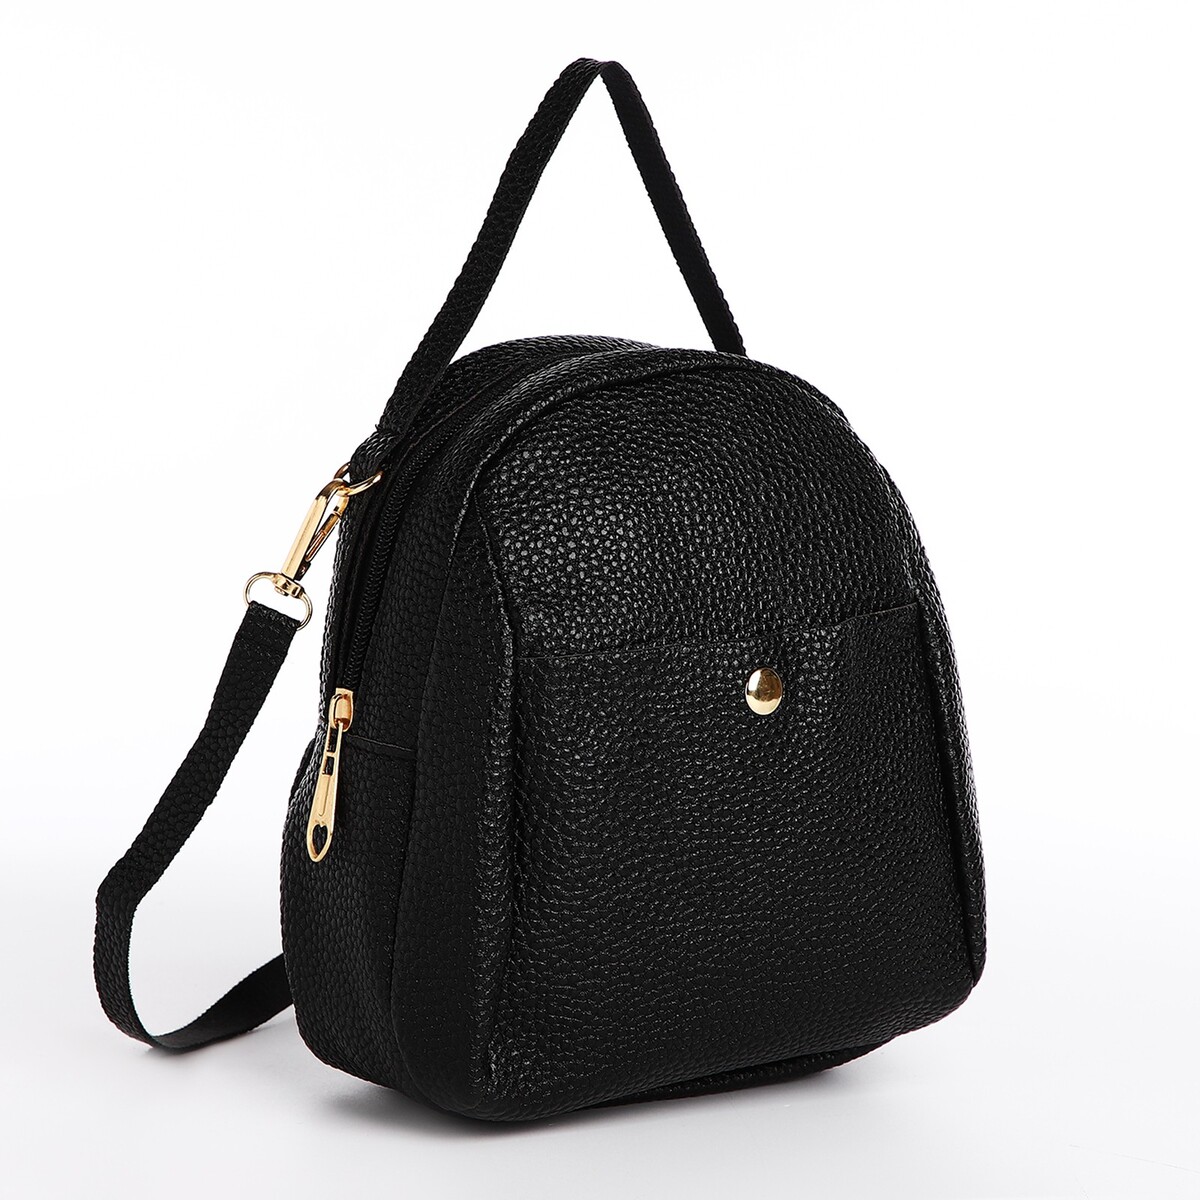 Мини-рюкзак женский из искусственной кожи на молнии, 1 карман, цвет черный